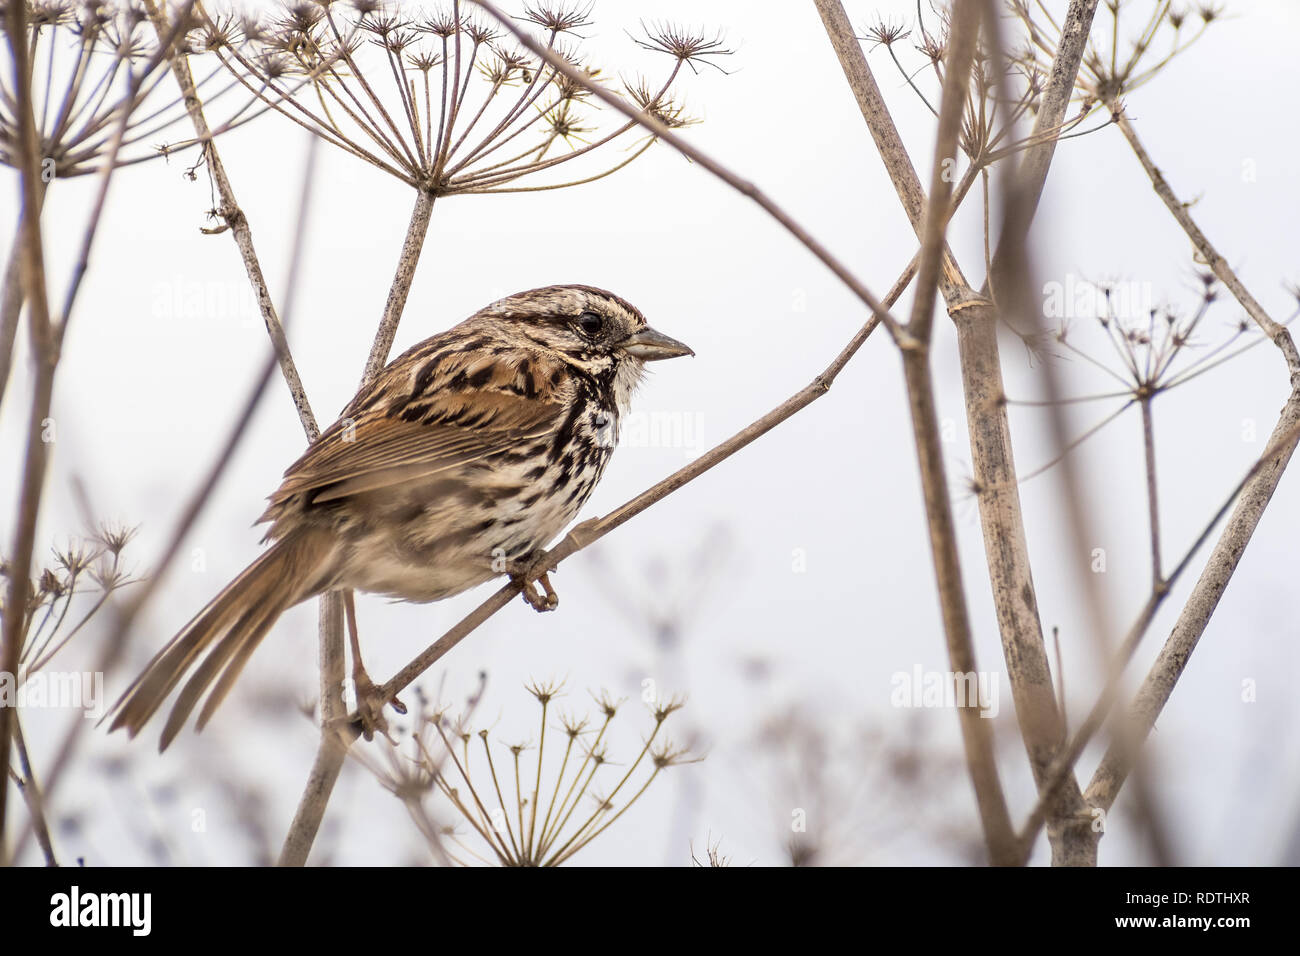 Cierre de canción sparrow (Melospiza melodia) posado sobre una planta de hinojo seco, fondo blanco; el área de la bahía de San Francisco, California Foto de stock